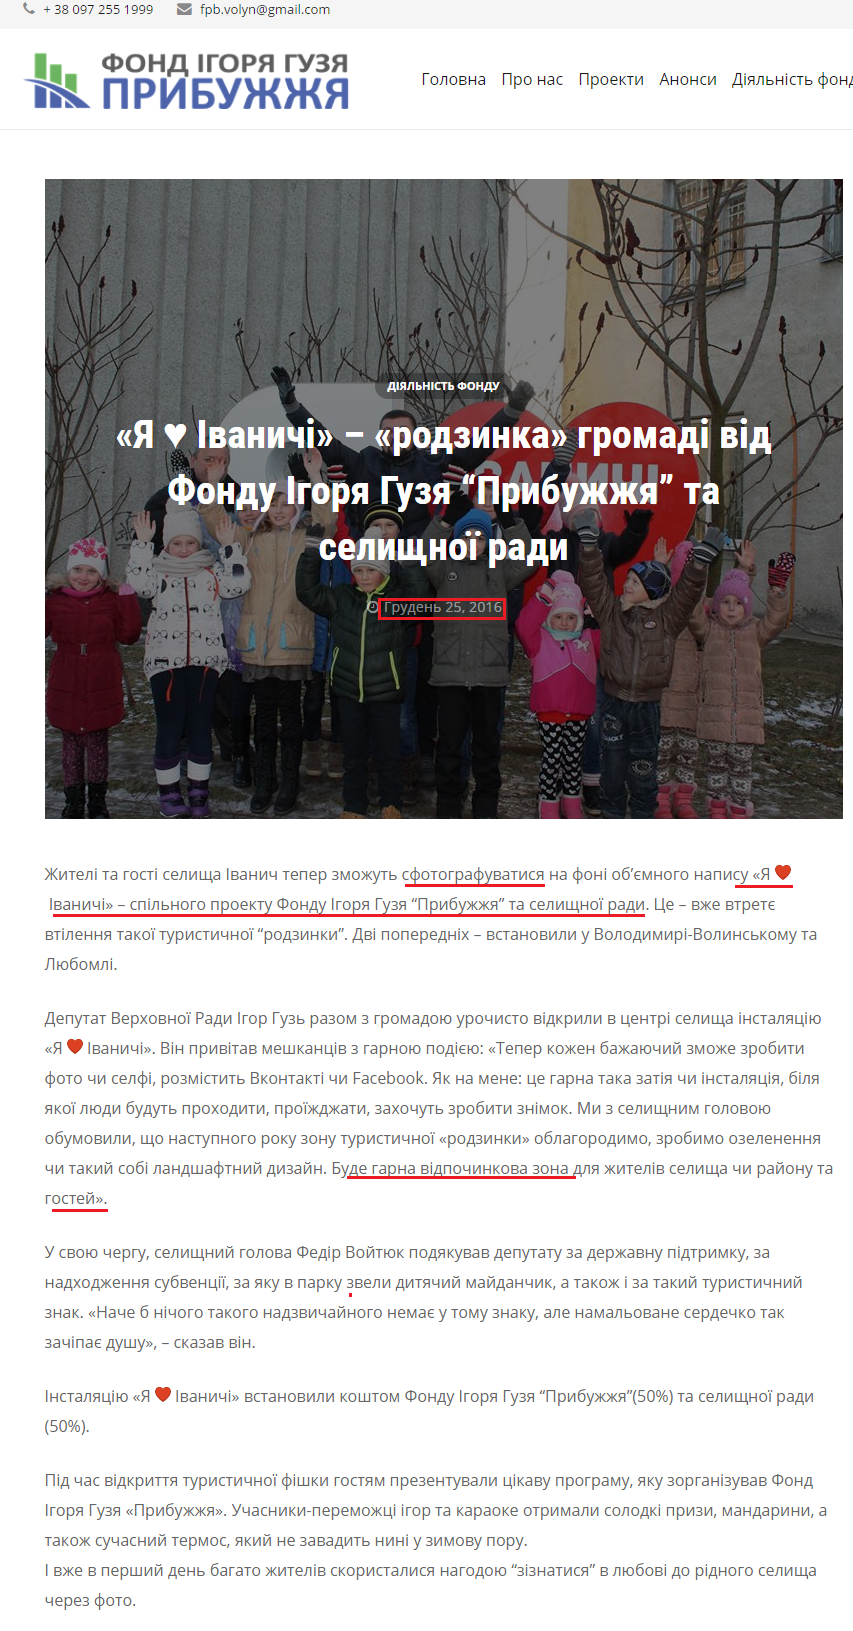 http://fpb.org.ua/ya-%E2%99%A5-ivanichi-rodzinka-gromadi-vid-fondu-igorya-guzya-pribuzhzhya-ta-selishhno%D1%97-radi.html